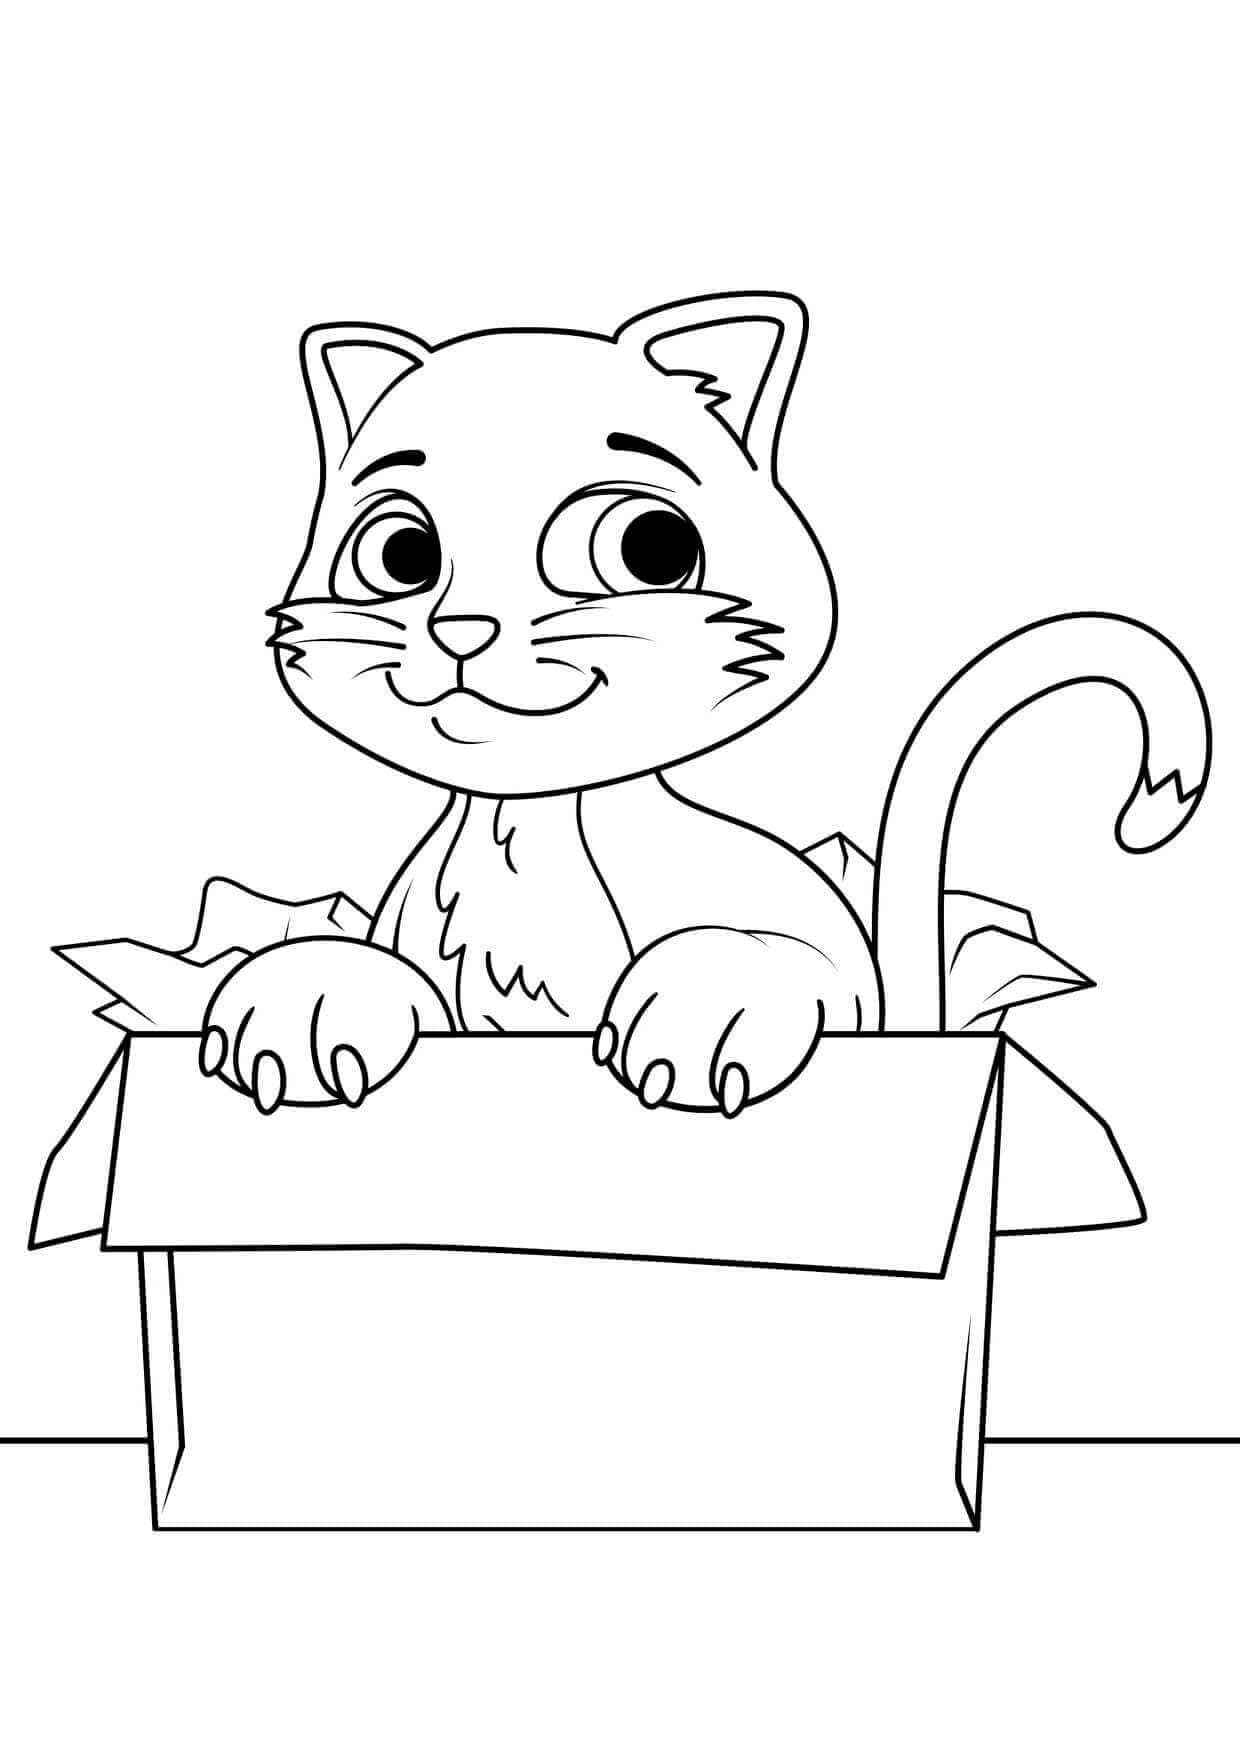 상자 속의 새끼 고양이 coloring page